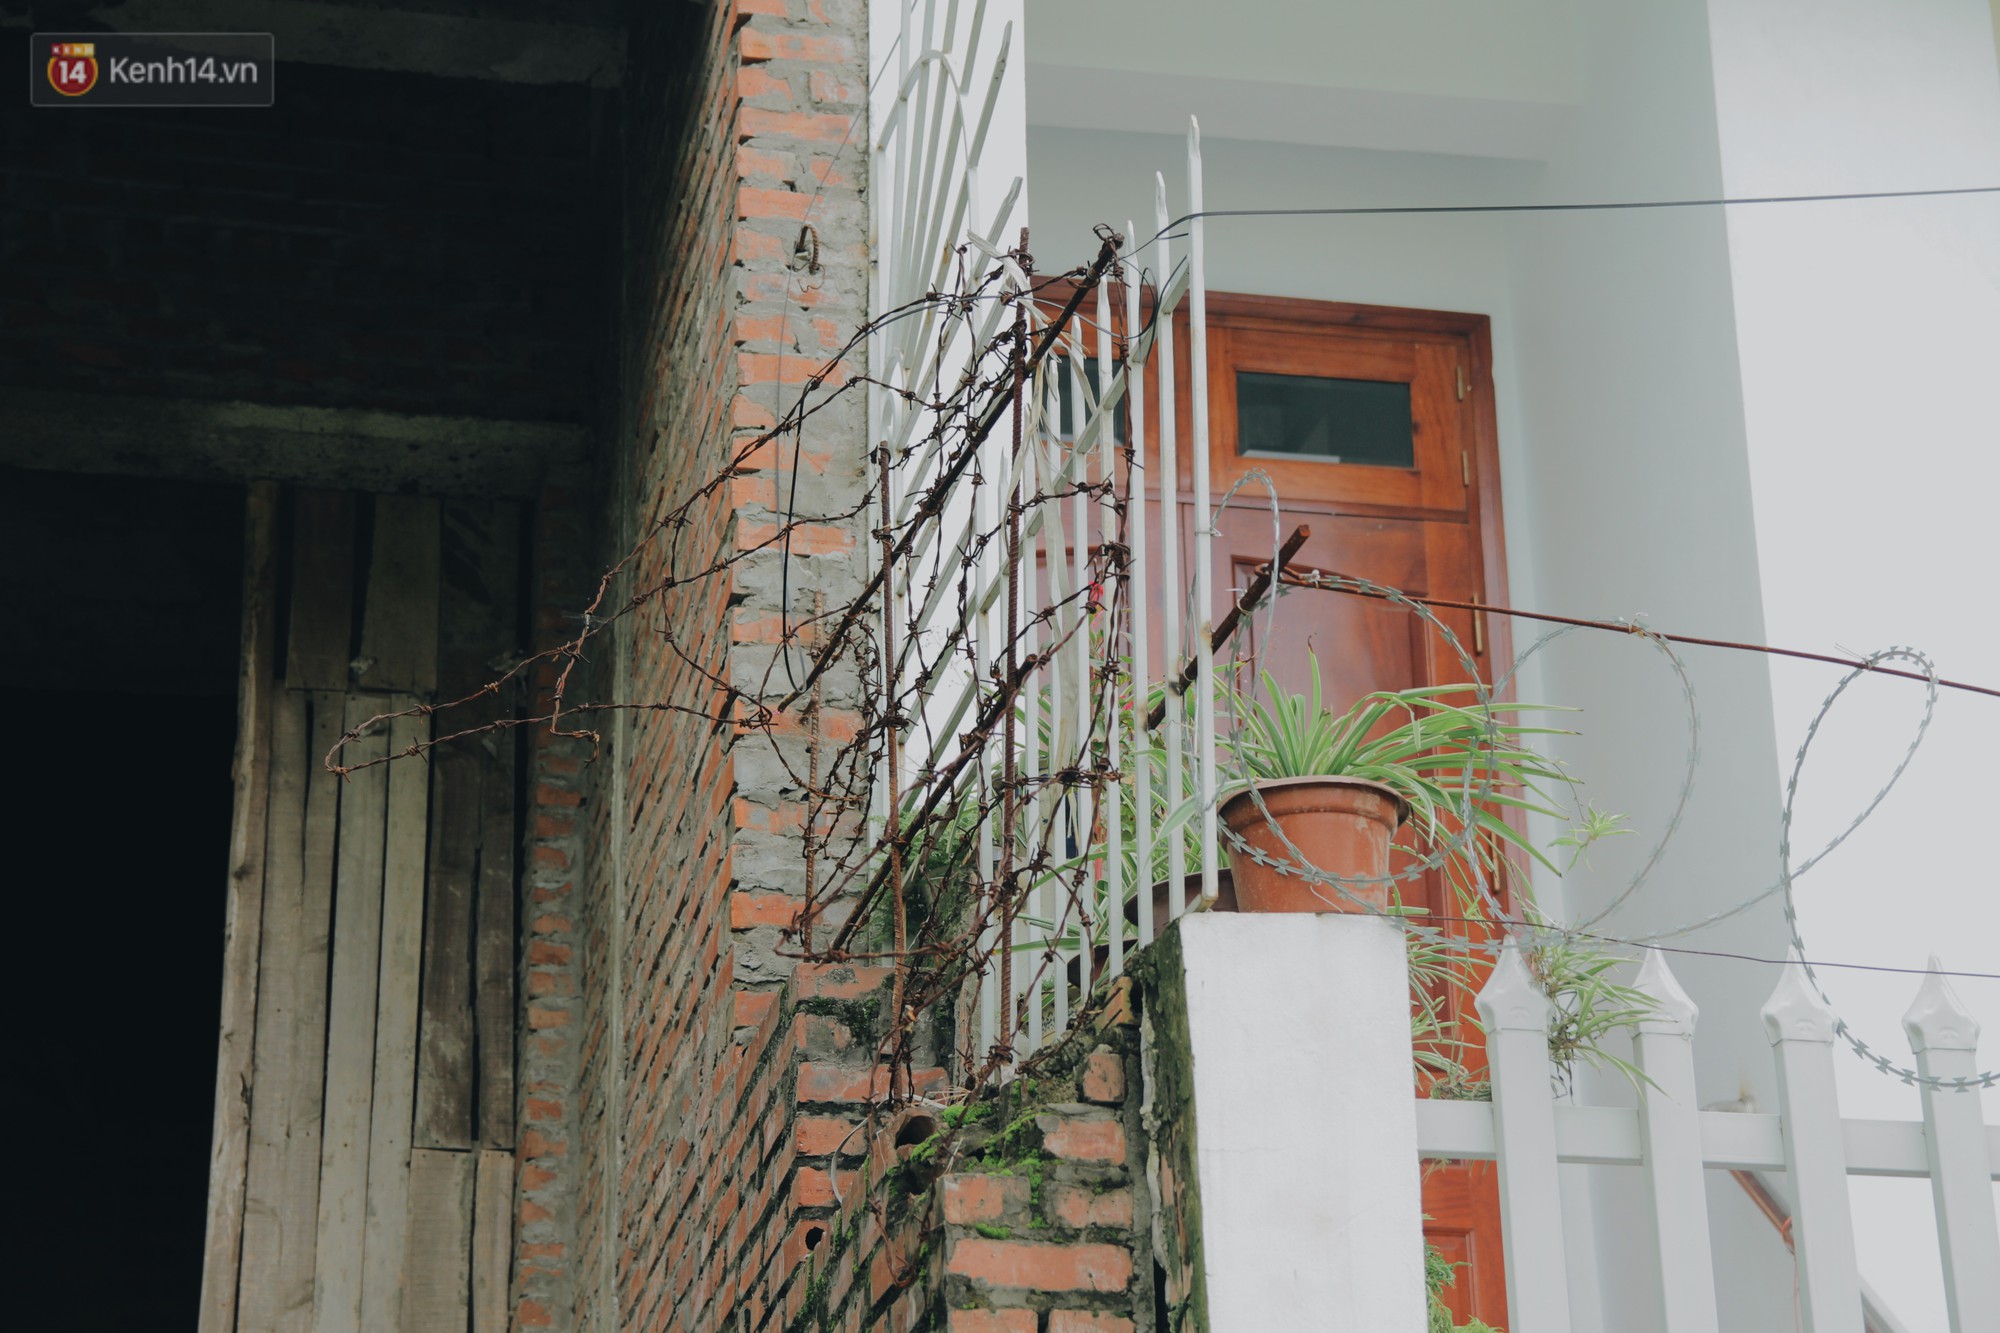 Dán cảnh cáo tiêm chích sẽ bị đánh và phạt nặng tại những biệt thự tiền tỷ bỏ hoang ở Hà Nội, nhiều con nghiện vẫn phớt lờ - Ảnh 6.